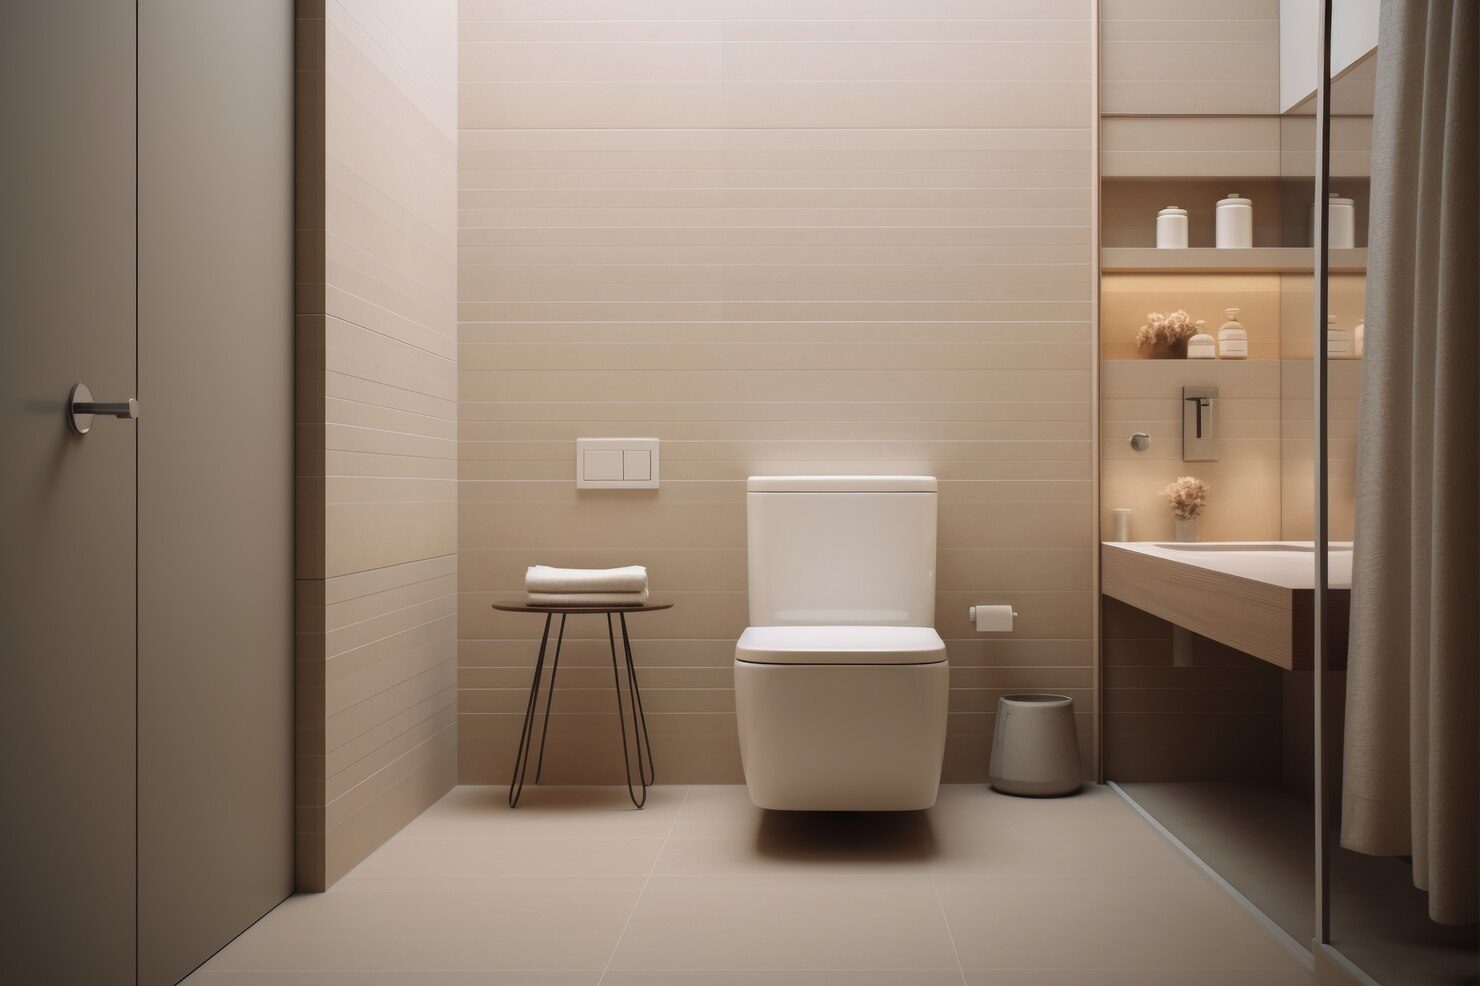 WC suspendu moderne avec fixation murale invisible et design épuré pour une salle de bain contemporaine